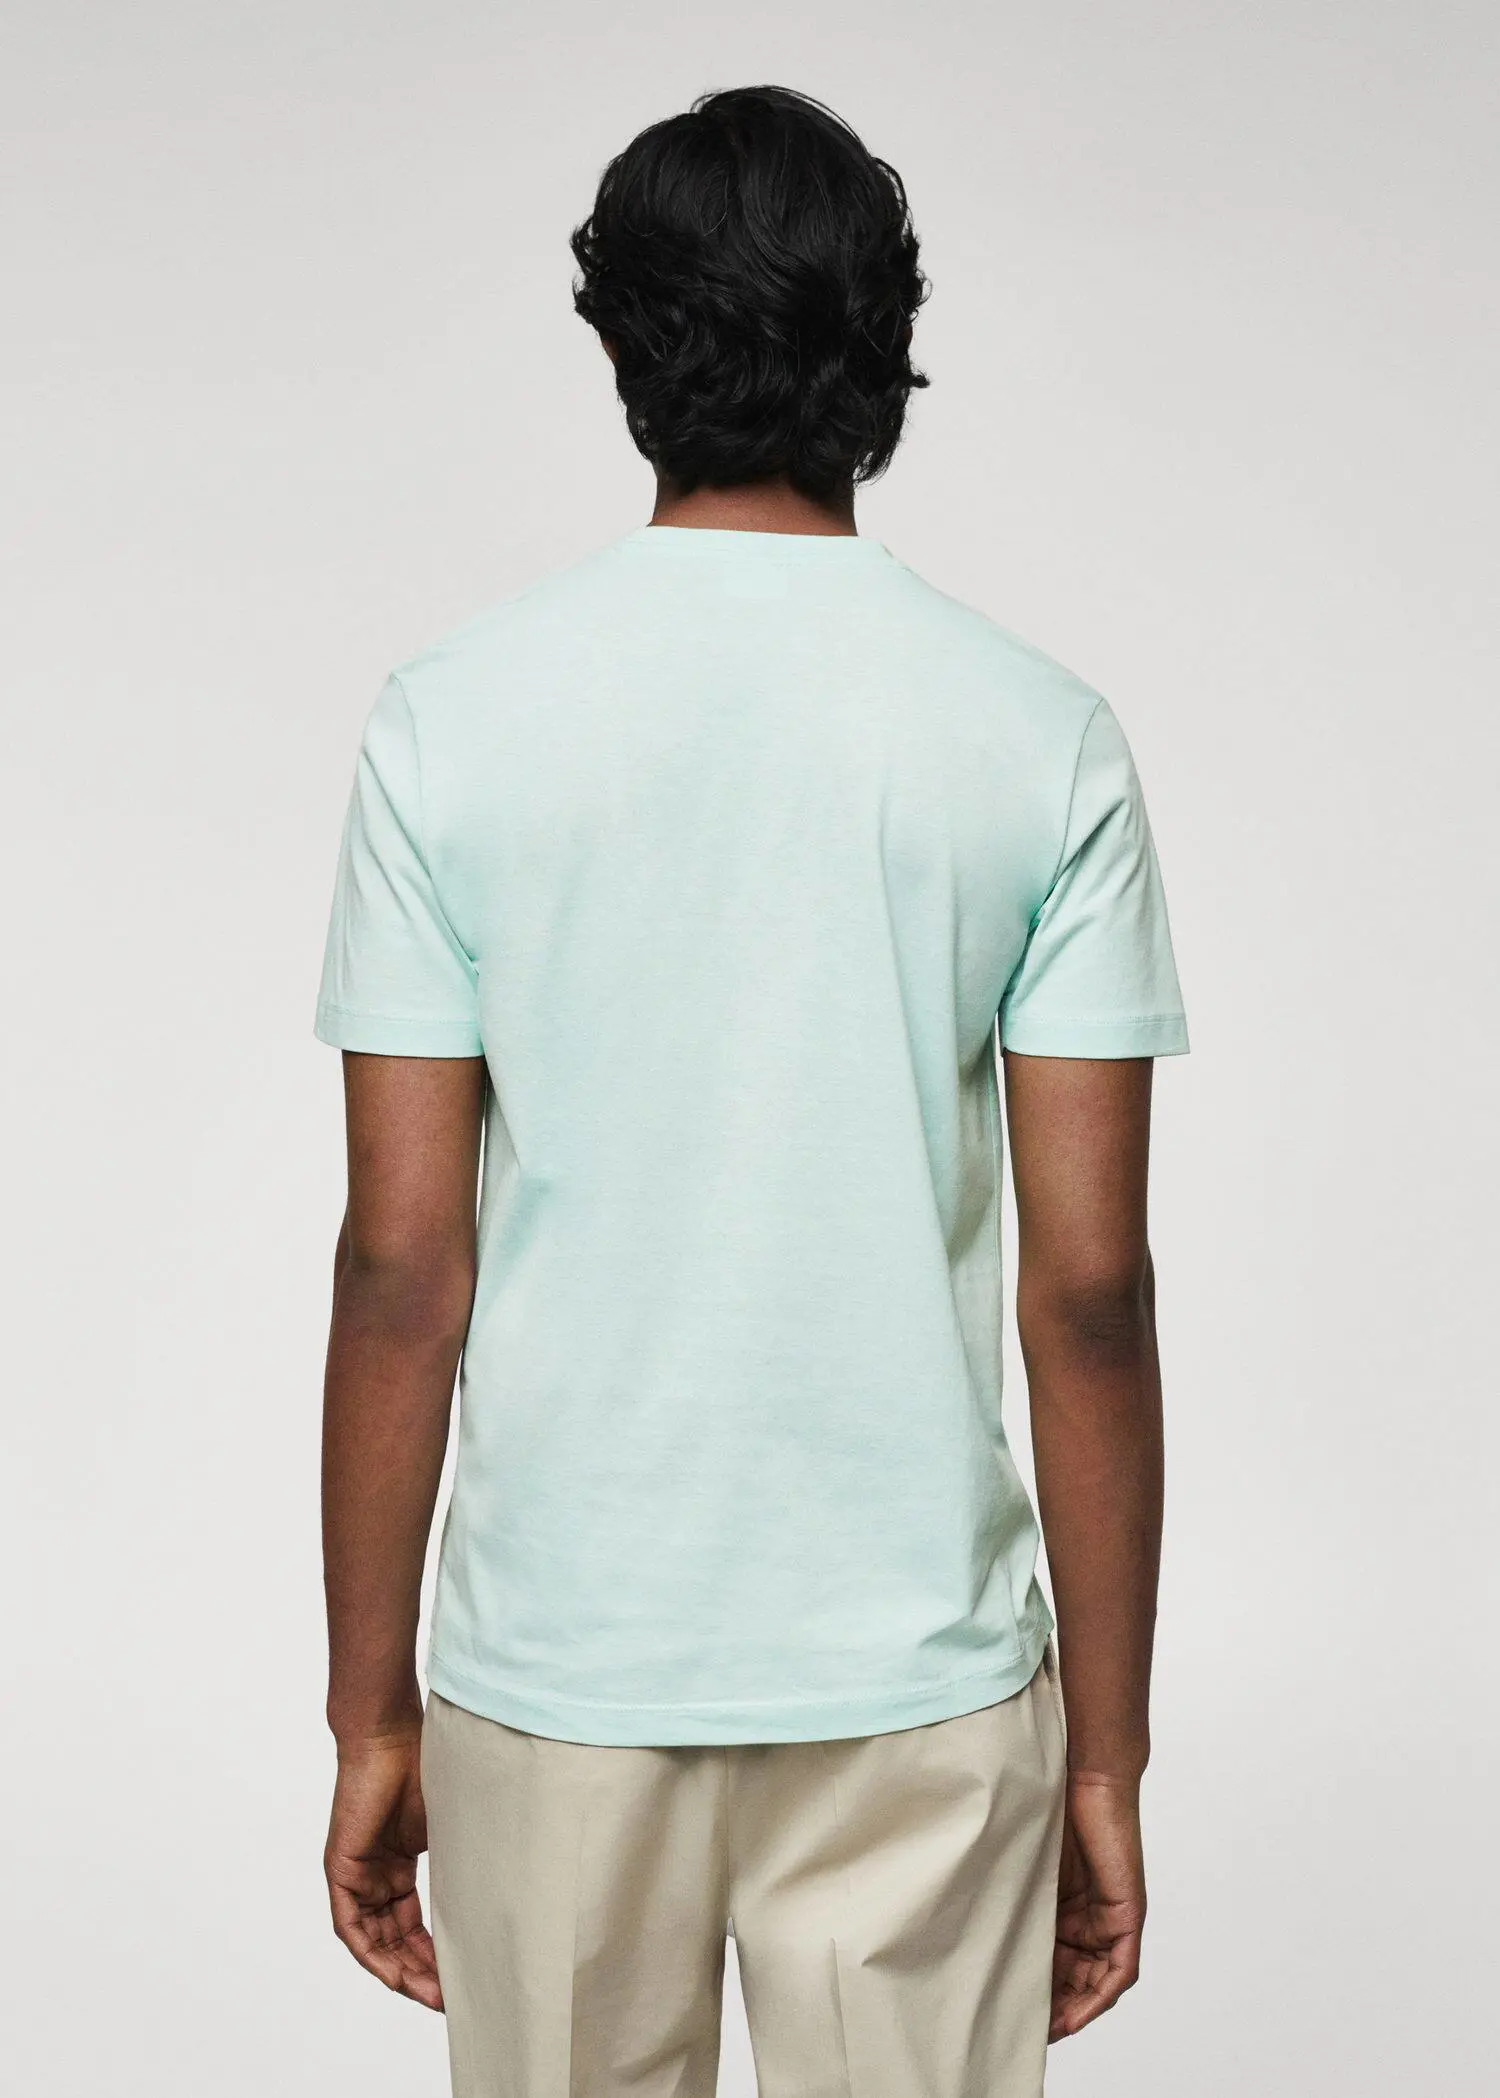 Mango 100% cotton t-shirt . a person wearing a light blue t-shirt. 